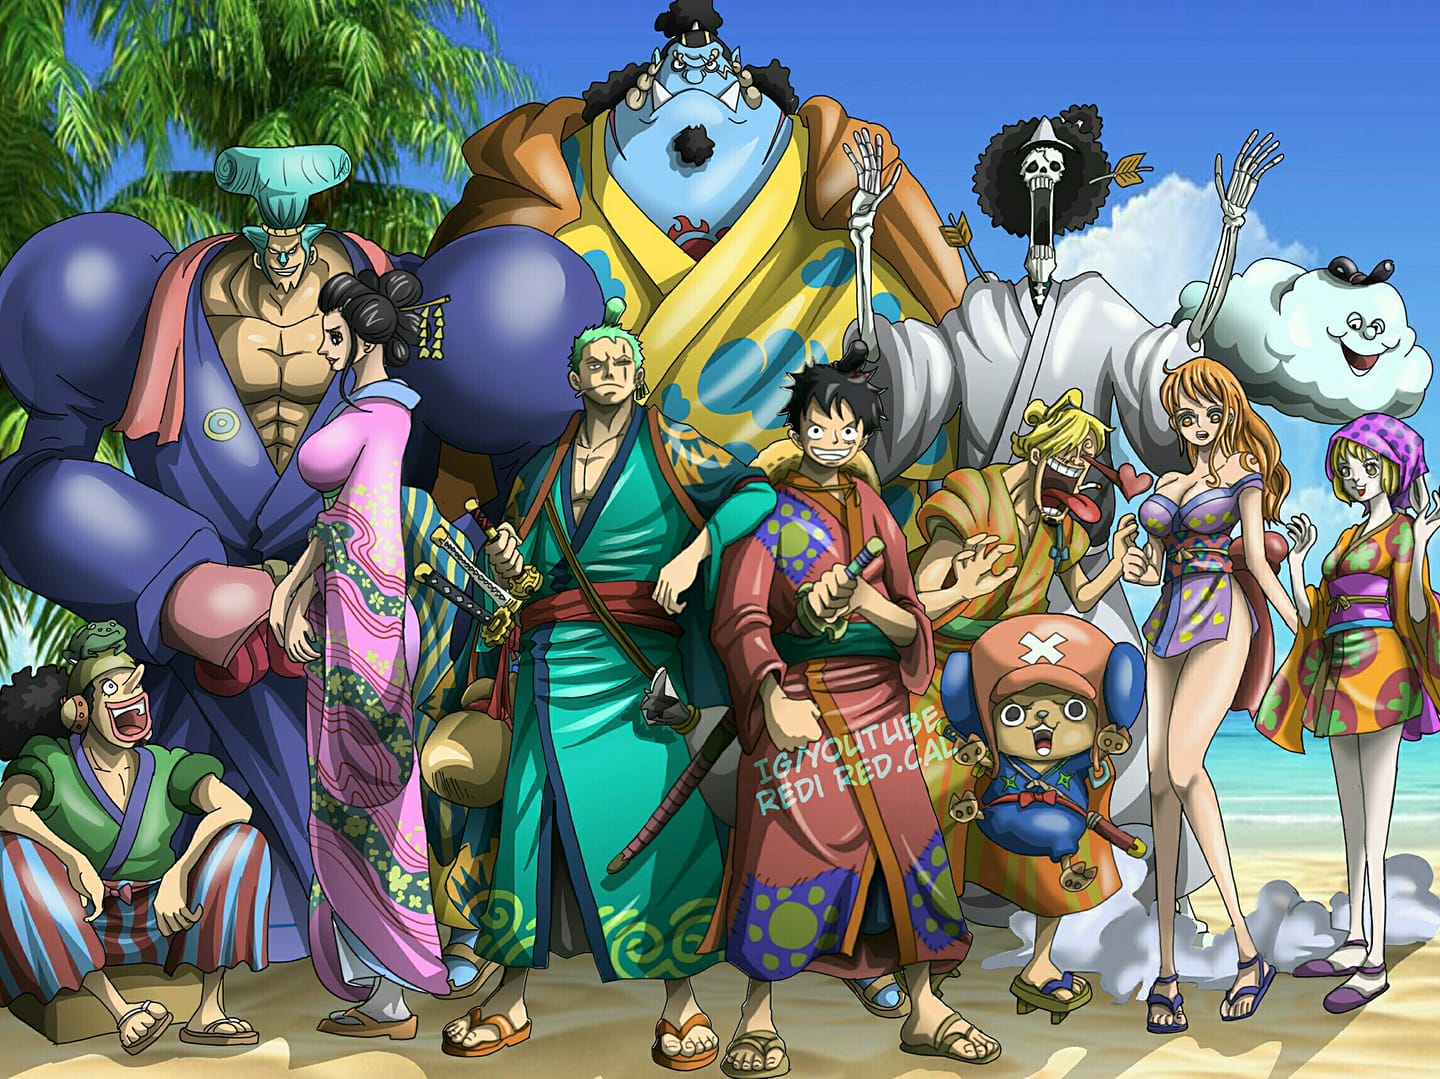 Thế giới bộ truyện One Piece trở nên sống động hơn với các bức ảnh One Piece 3D. Tận hưởng trải nghiệm với những hình ảnh động của các nhân vật yêu thích, như Luffy, Zoro, Sanji và Nami. Bạn sẽ cảm thấy như mình đang trực tiếp tham gia vào các cuộc phiêu lưu của nhóm hải tặc Mũ Rơm.